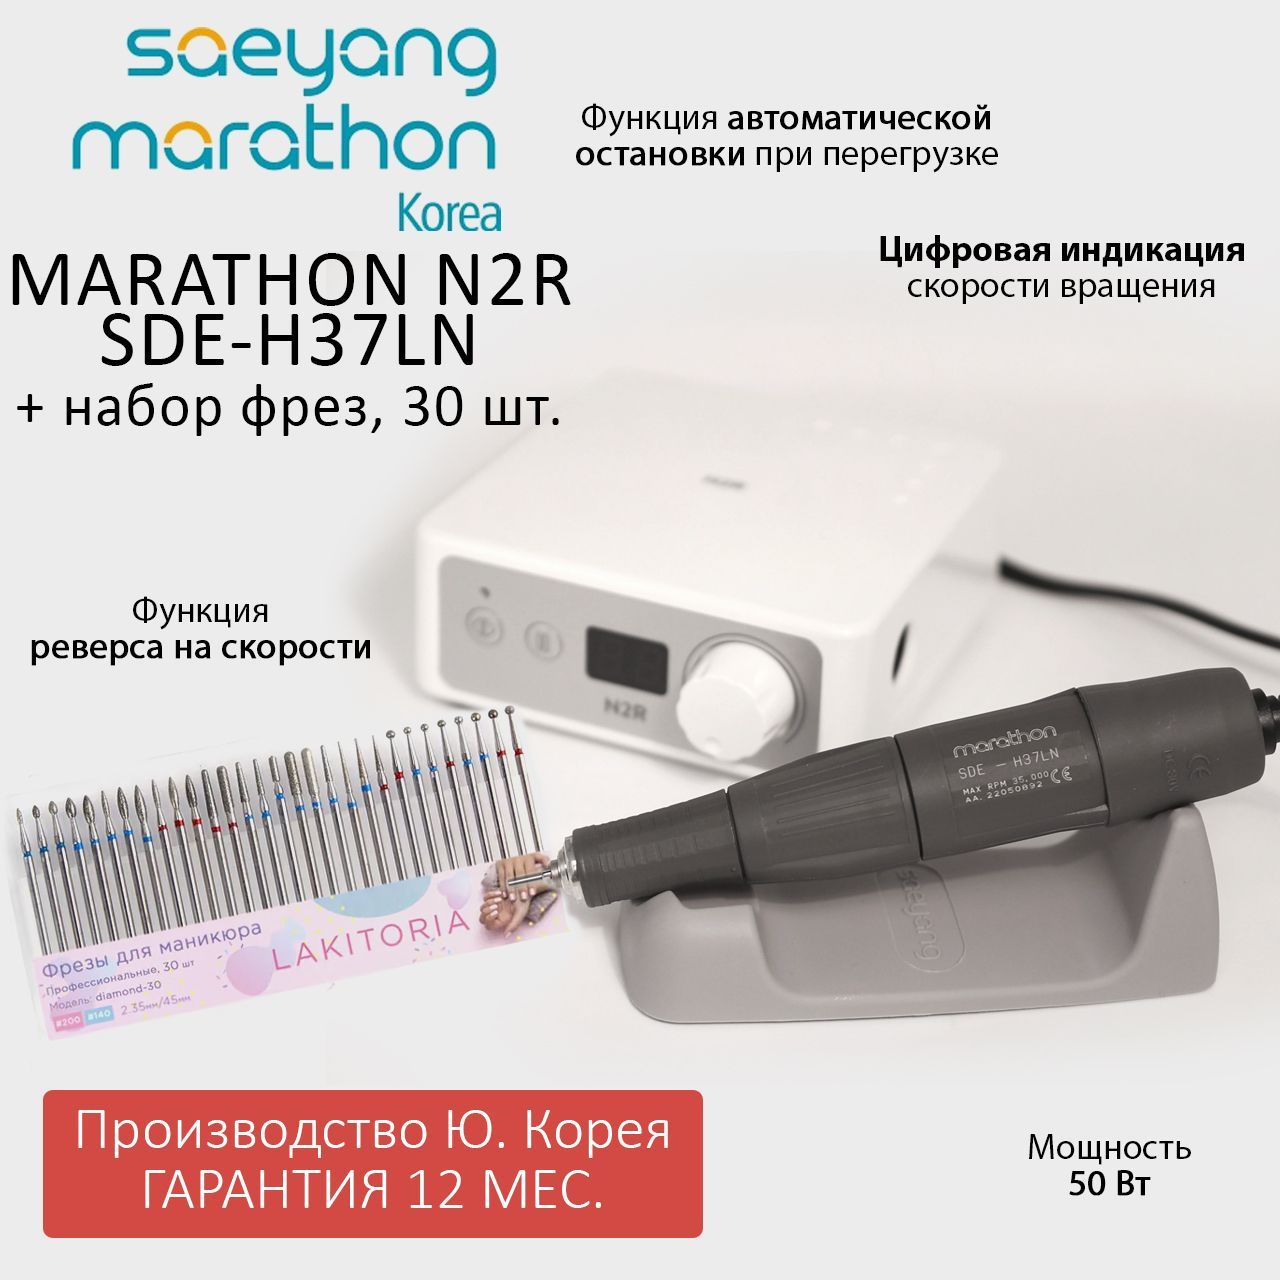 Аппарат для маникюра Marathon N2R SDE-H37LN без педали и набор фрез для маникюра 30шт зоопарк м дружинина книжка eva с пласт глазками 205х210мм 5 разворотов в кор 30шт